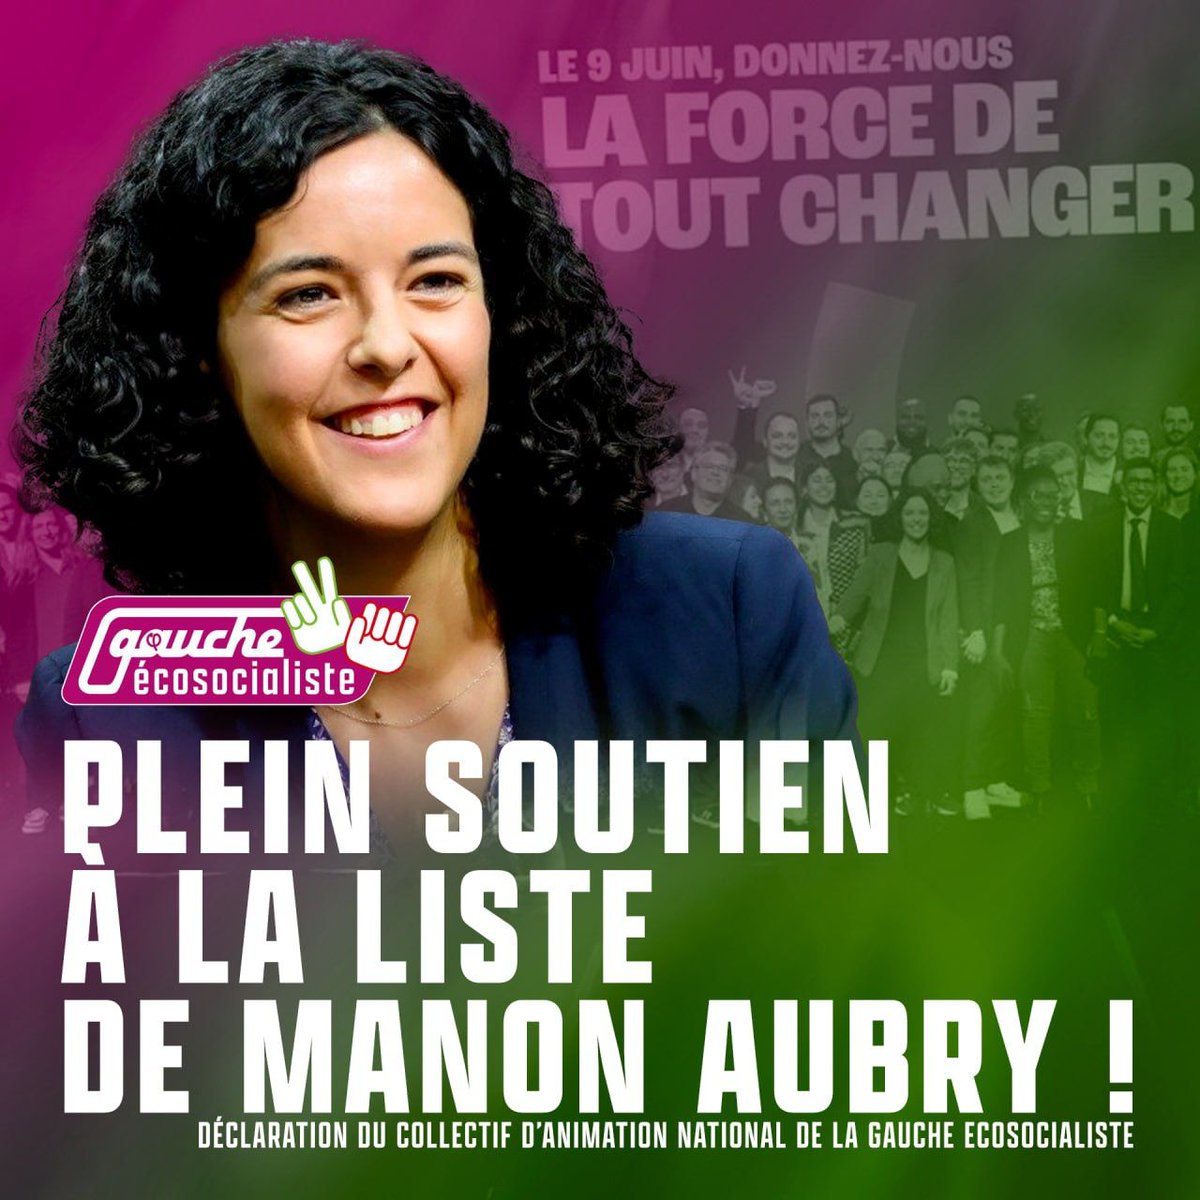 Avec Manon Aubry 
#LaForceDeToutChanger